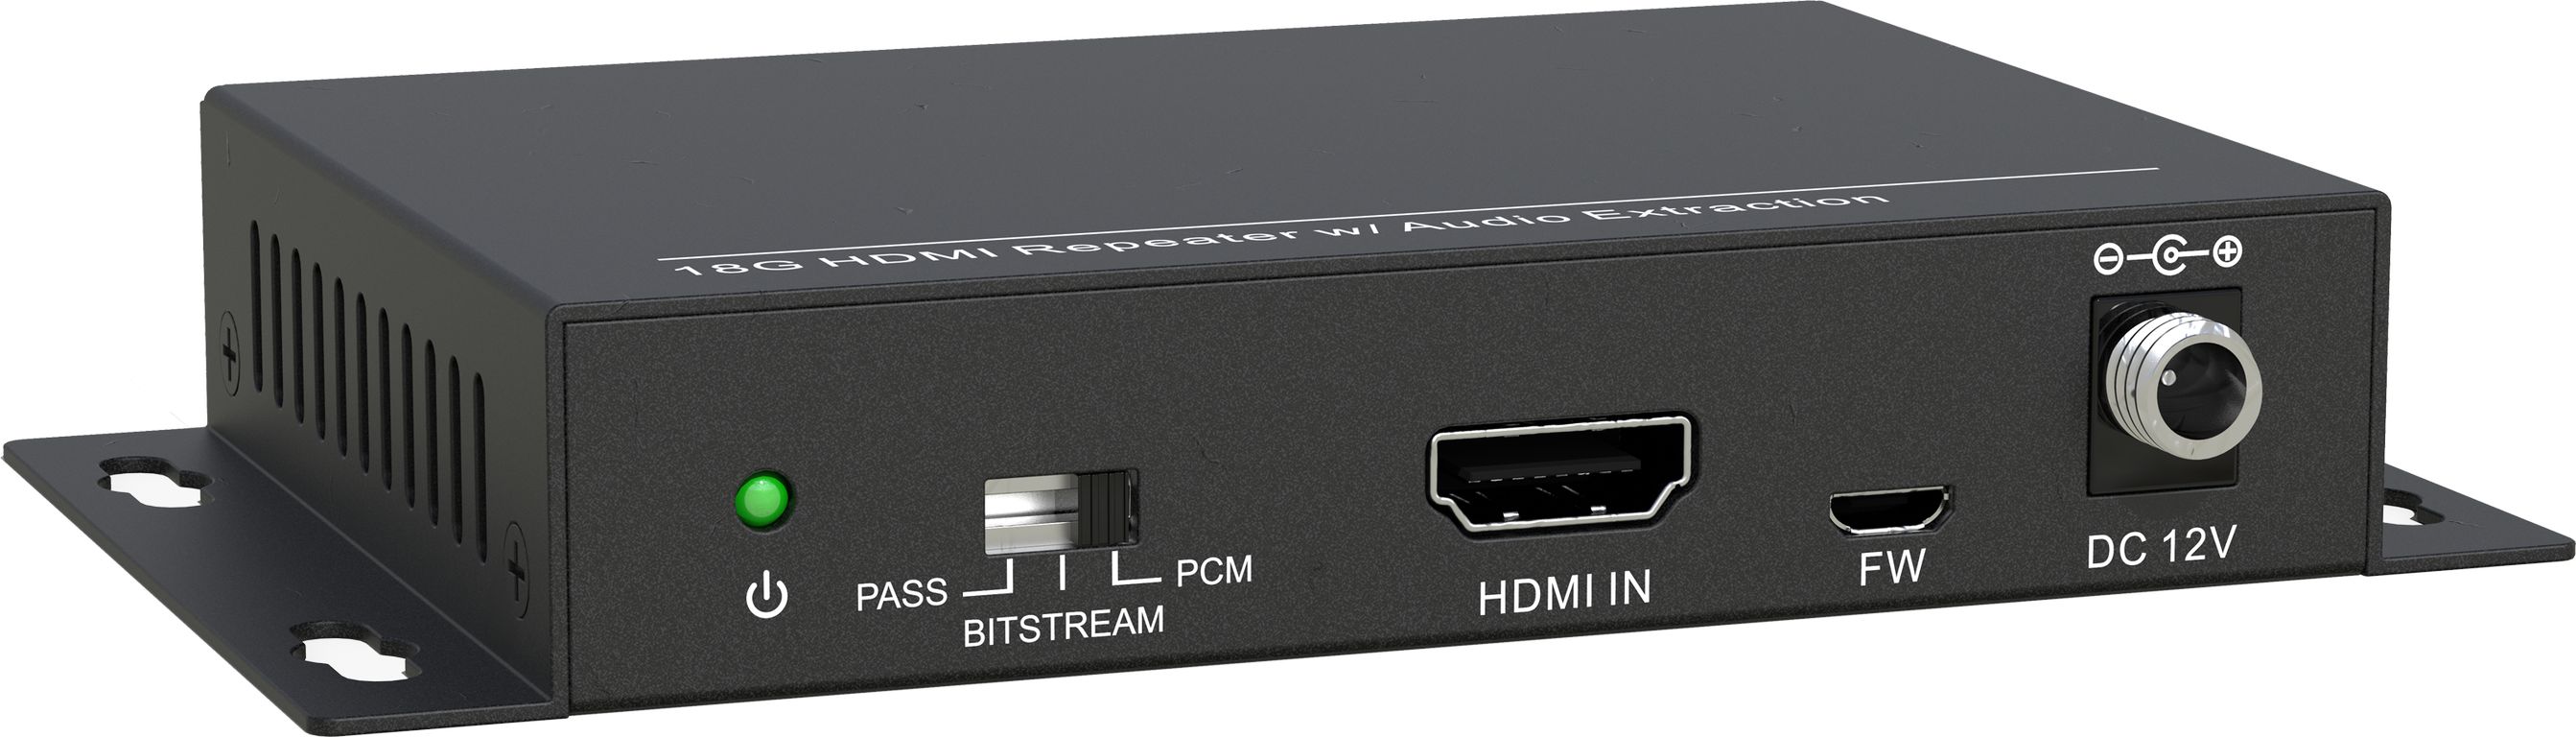 HDMI коммутаторы, разветвители, повторители Digis SS-AC1-4K2 hdmi коммутаторы разветвители повторители dr hd sp 1166 sl